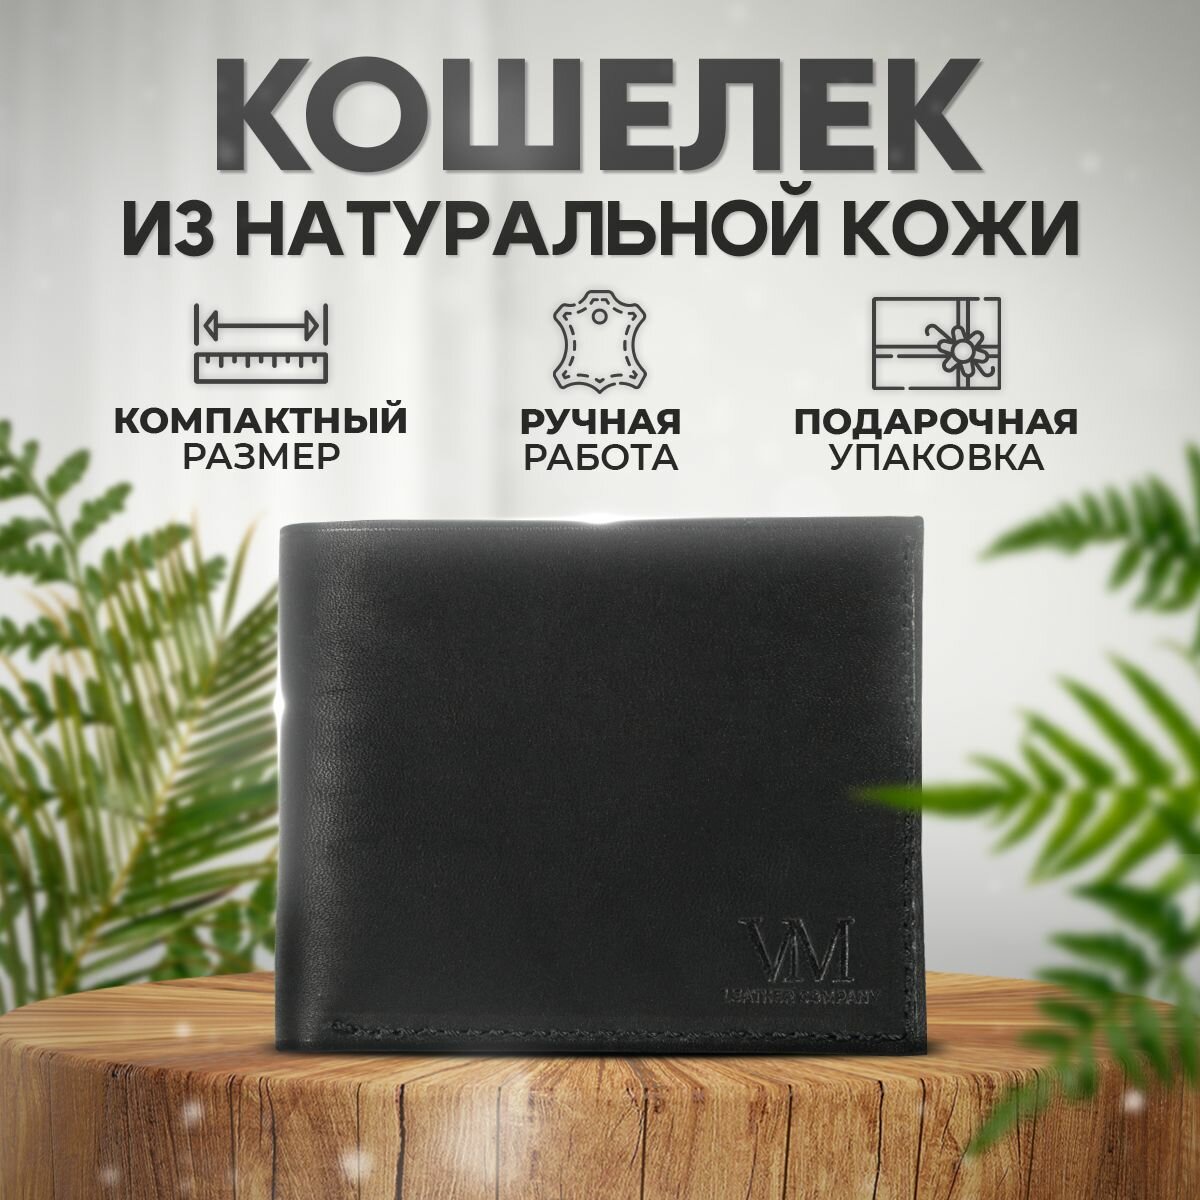 Кошелек VM Leather Company